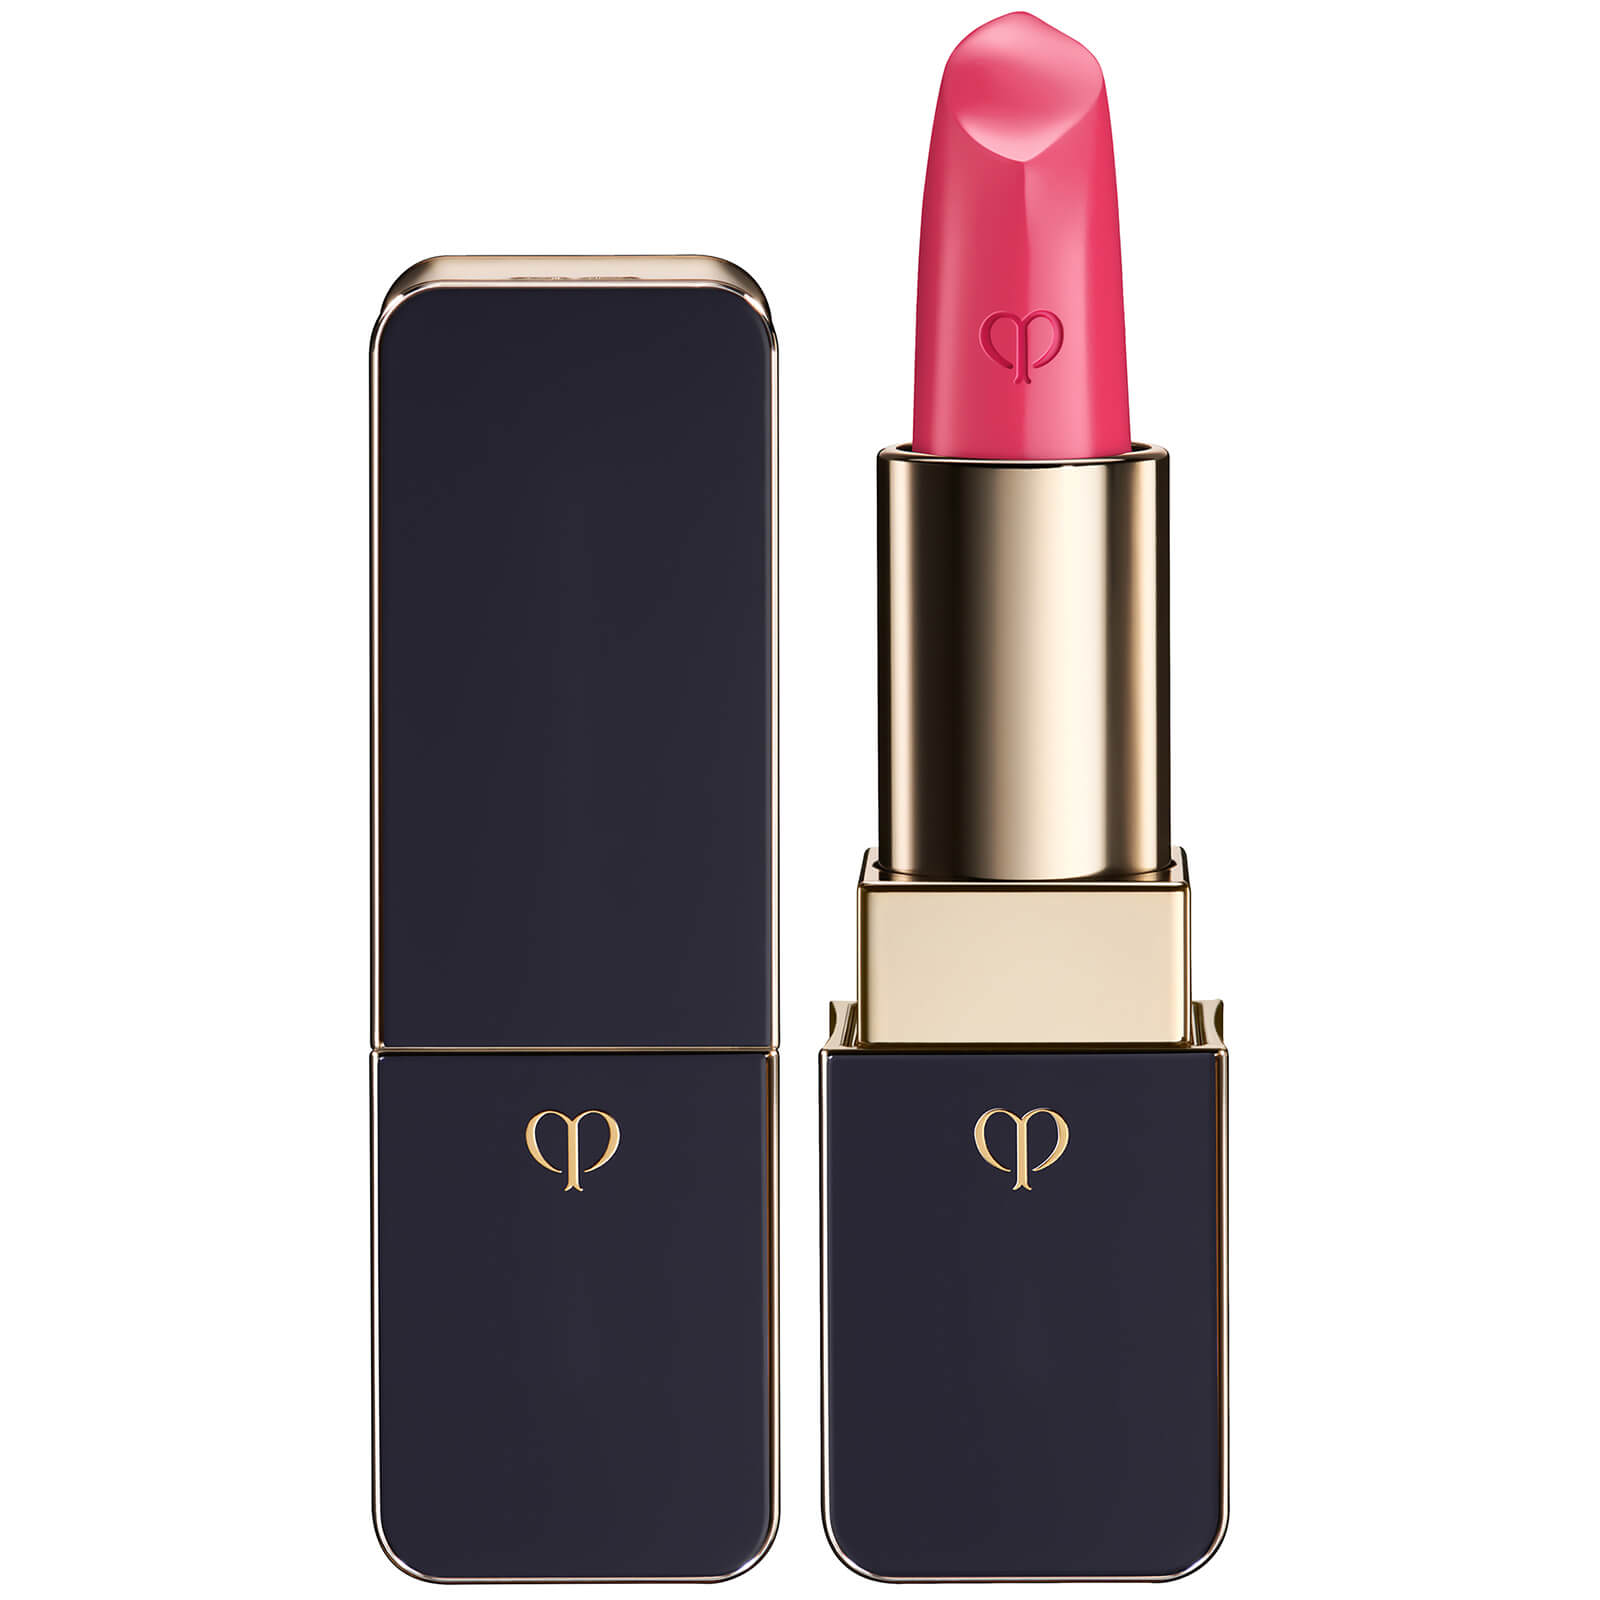 Cle de Peau Beaute Lipstick Matte (Various Shades) - 115 - Pink Honeysuckle